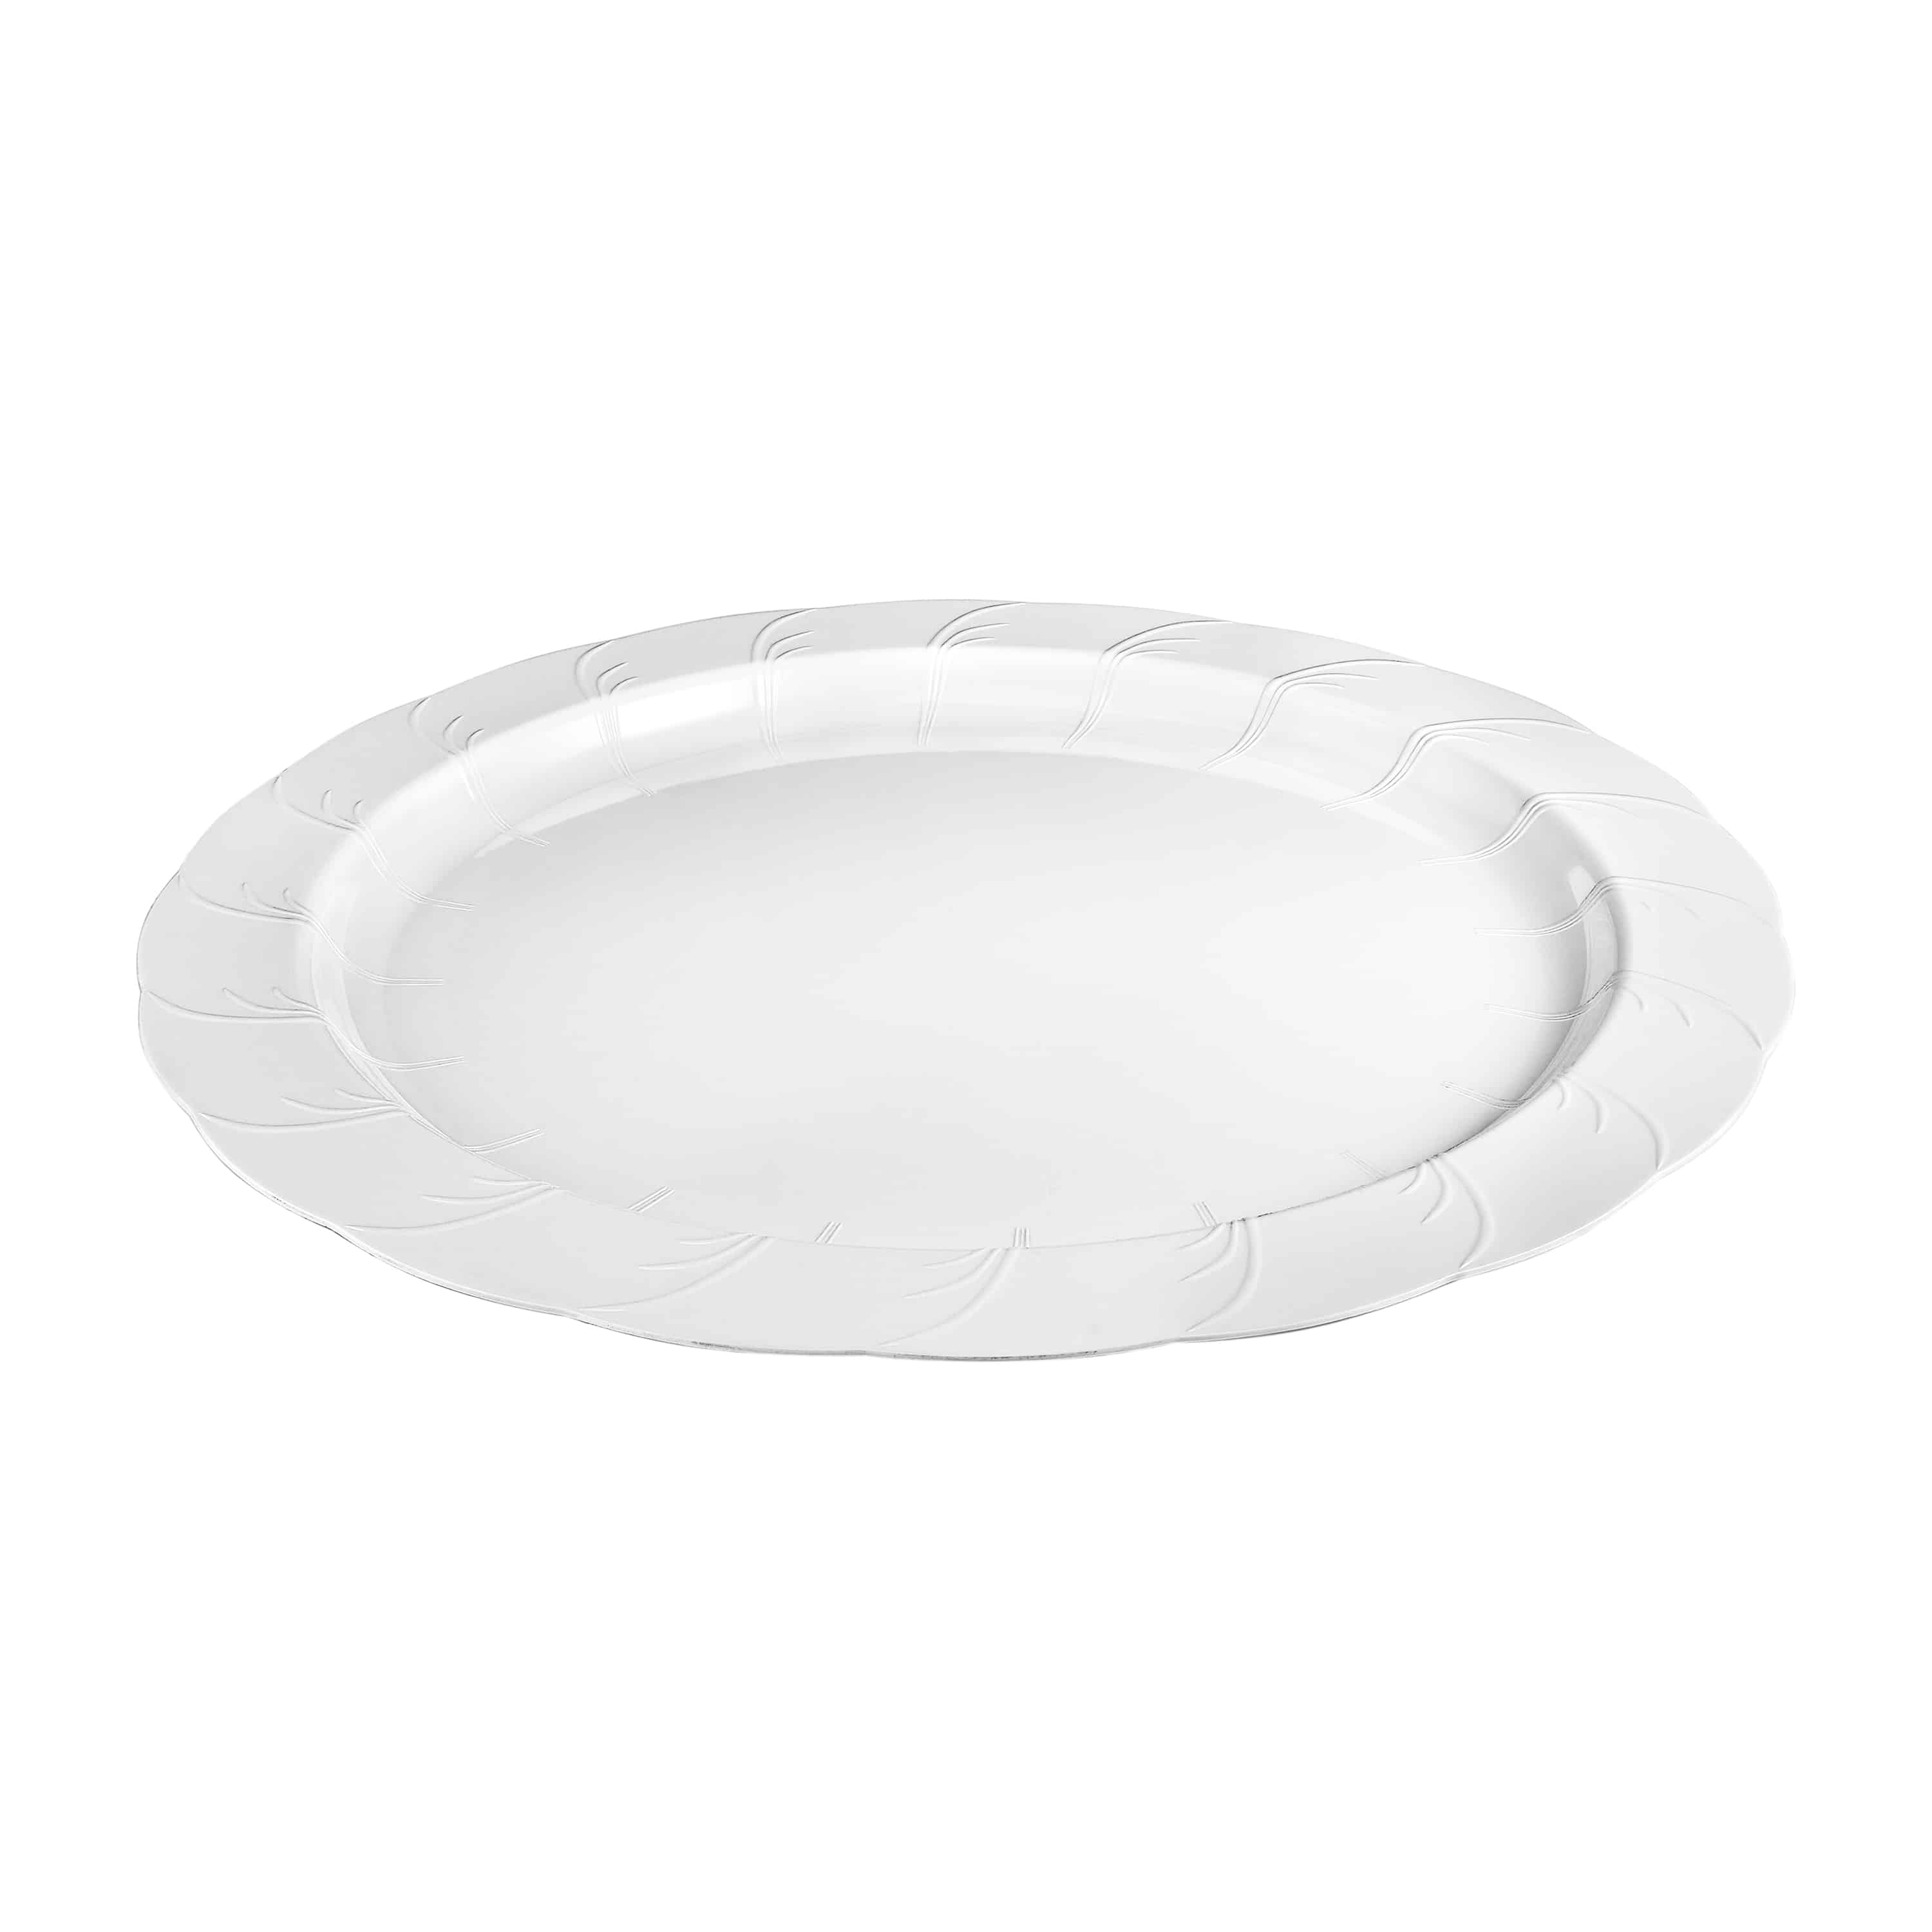 Elegance Premium Plastic Round Dinnerware